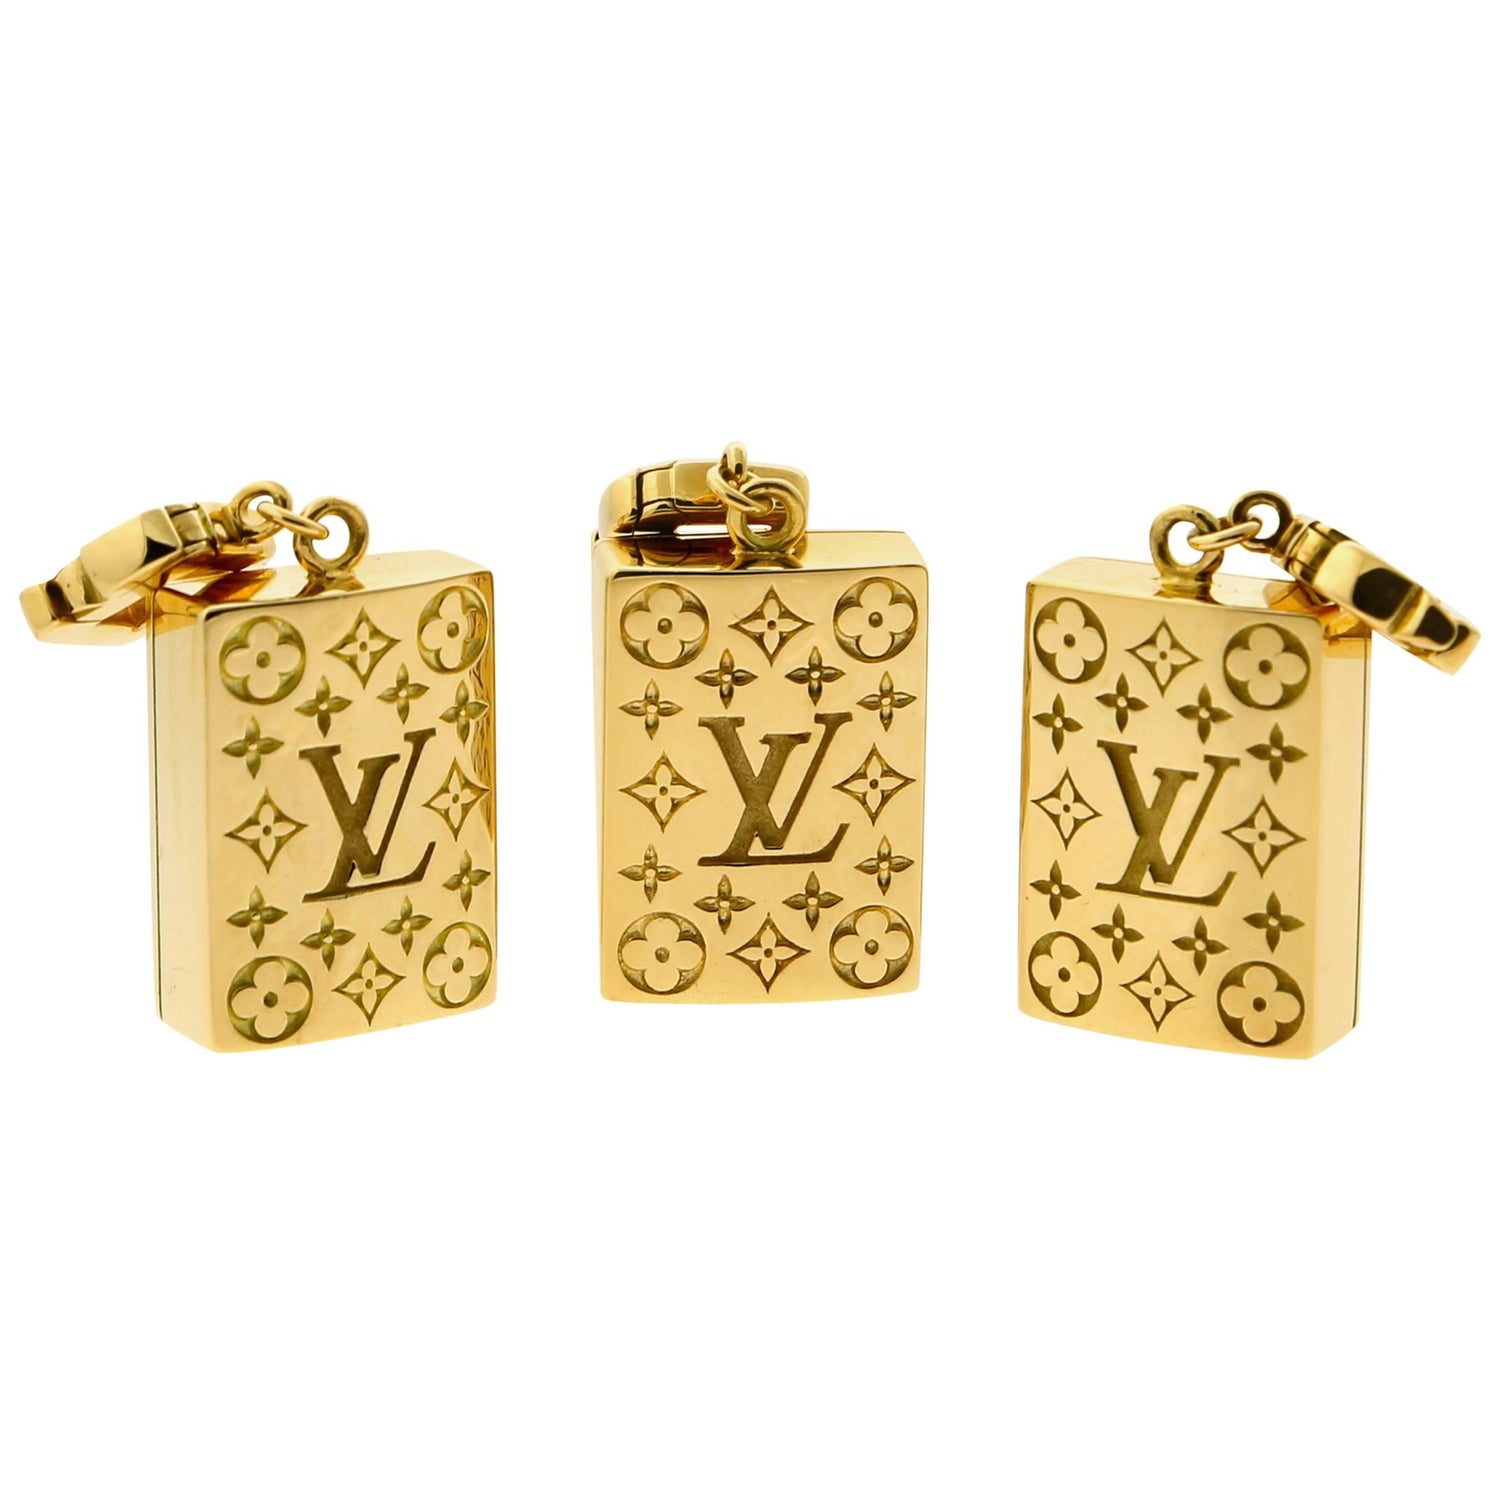 Louis Vuitton dentelle One Row Bracelet, White Gold and Diamonds Grey. Size M